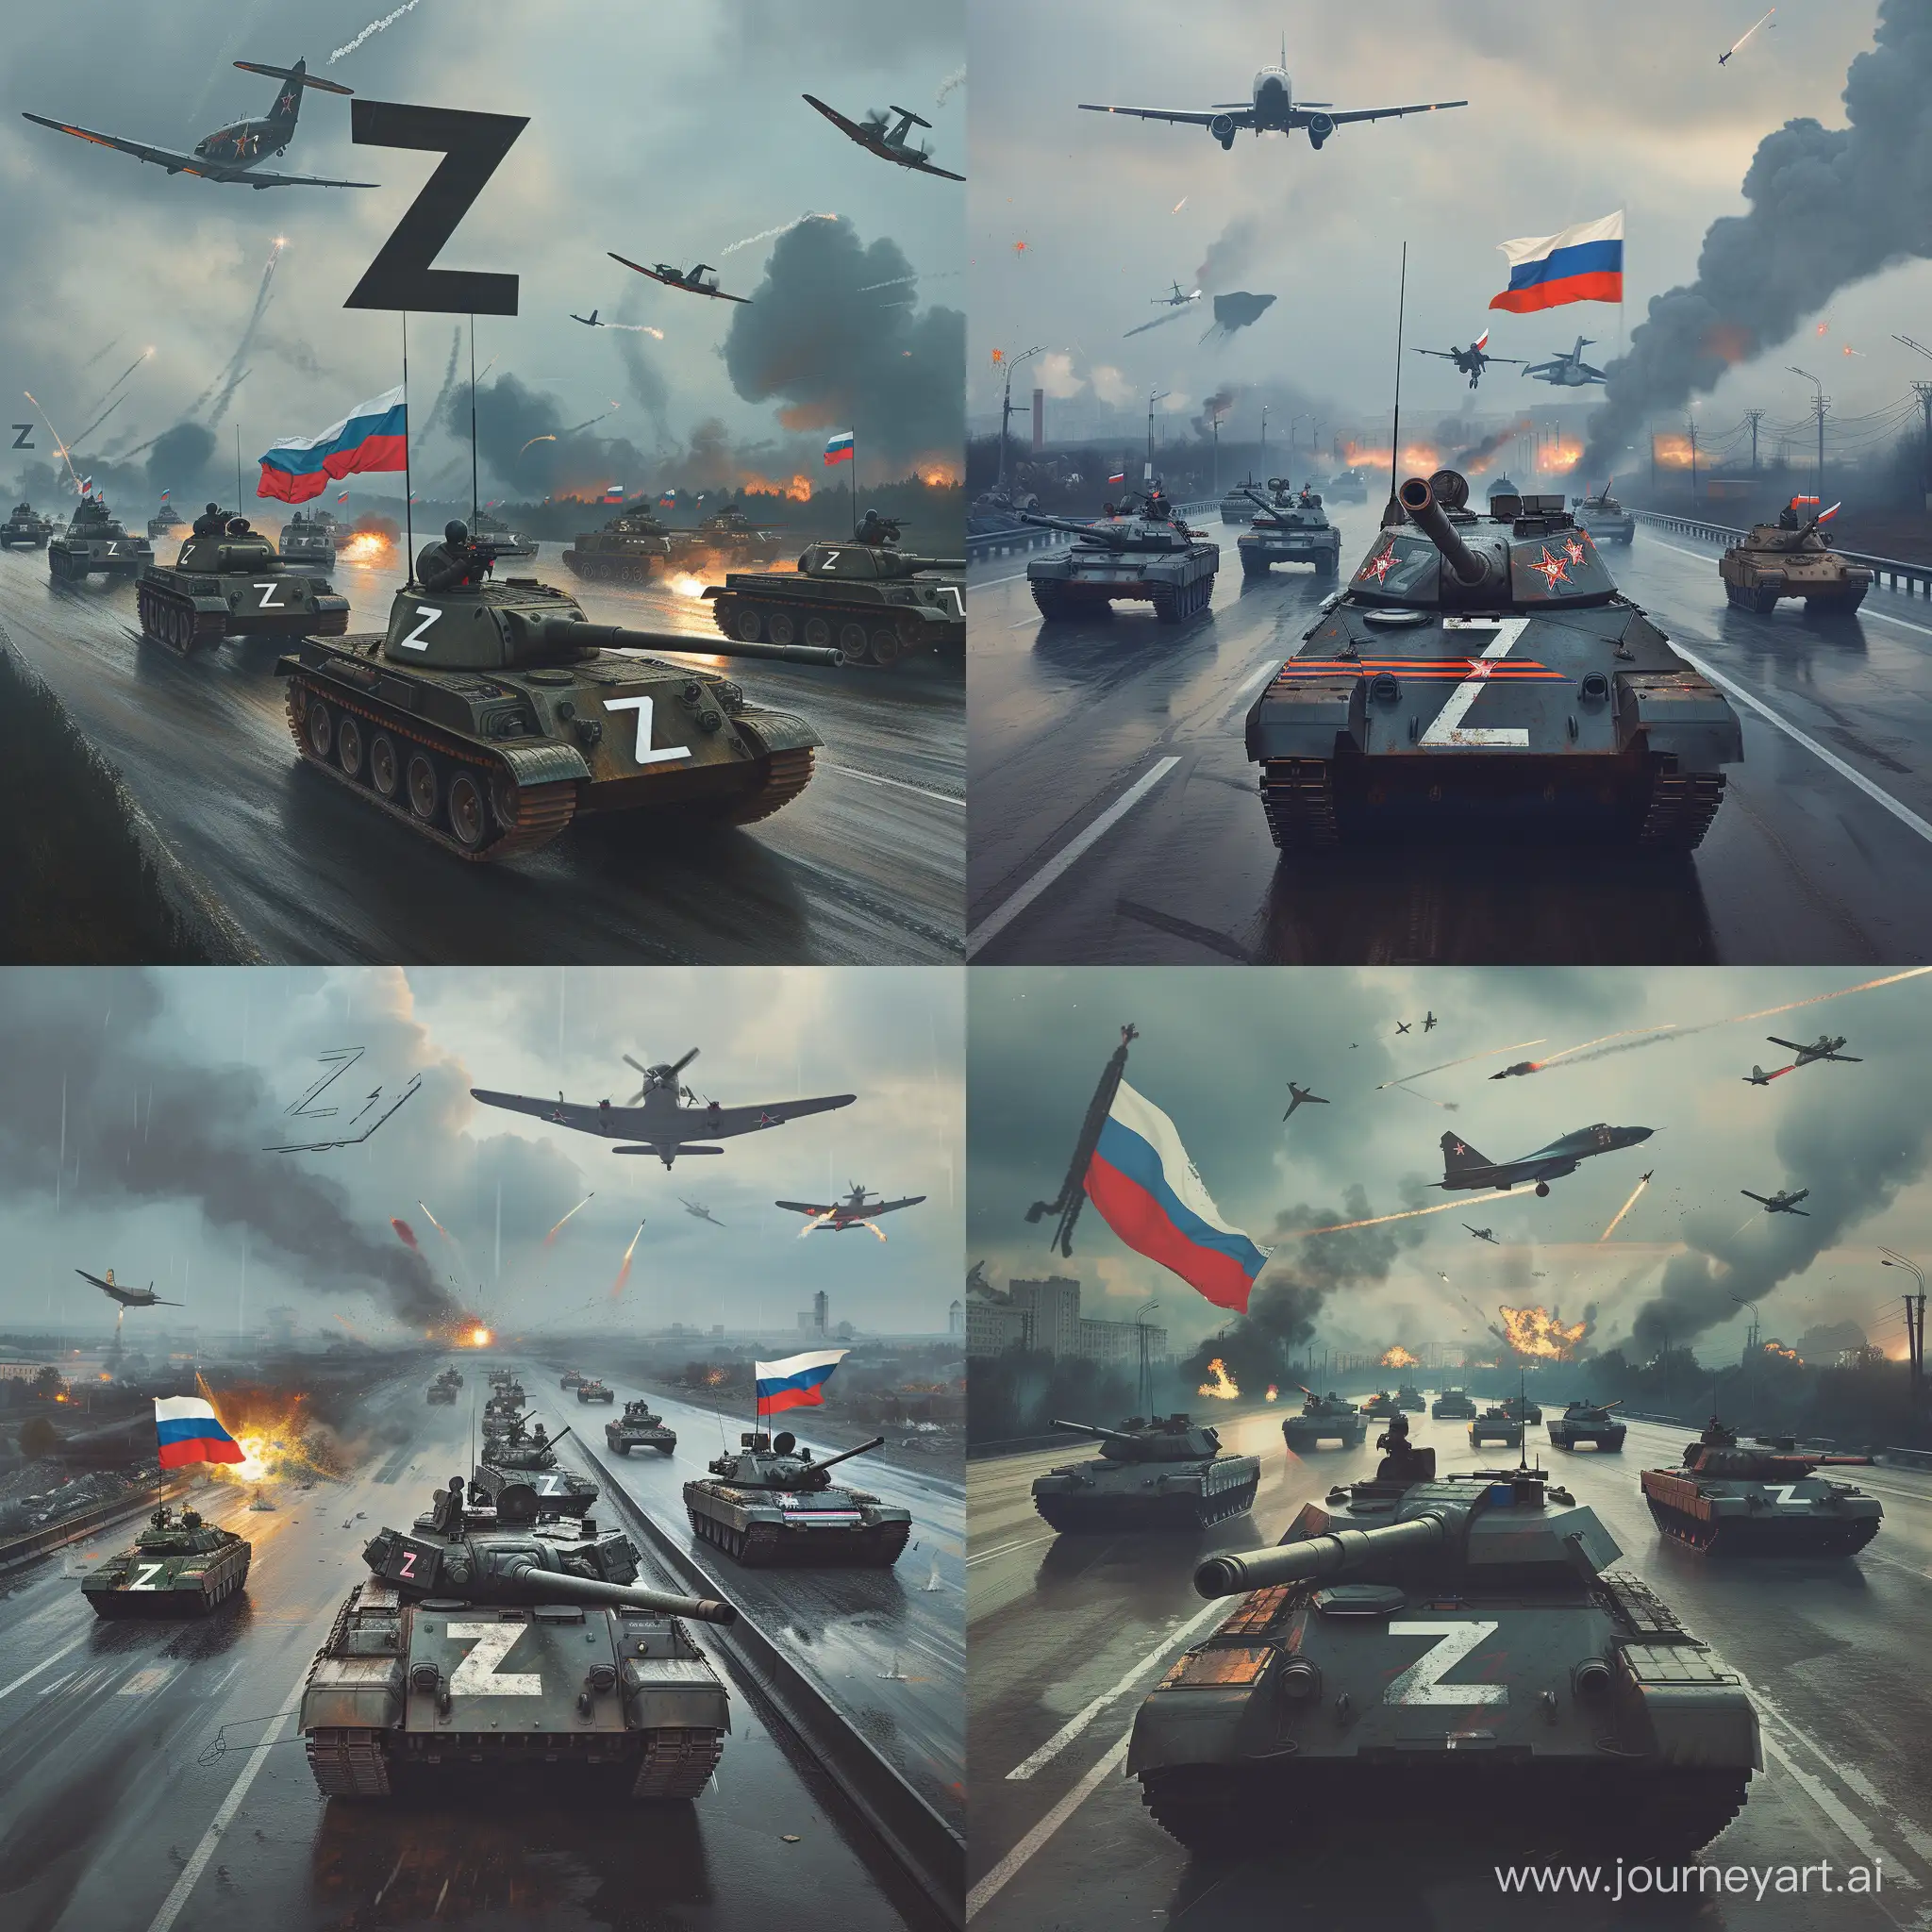 Российские Танки и другие военные машины на которых нарисована буква Z едут по дороге, над ними летают военные самолеты, погода пасмурная, вдали виднеются клубы дыма и зарево от взрывов, на танке Российский флаг